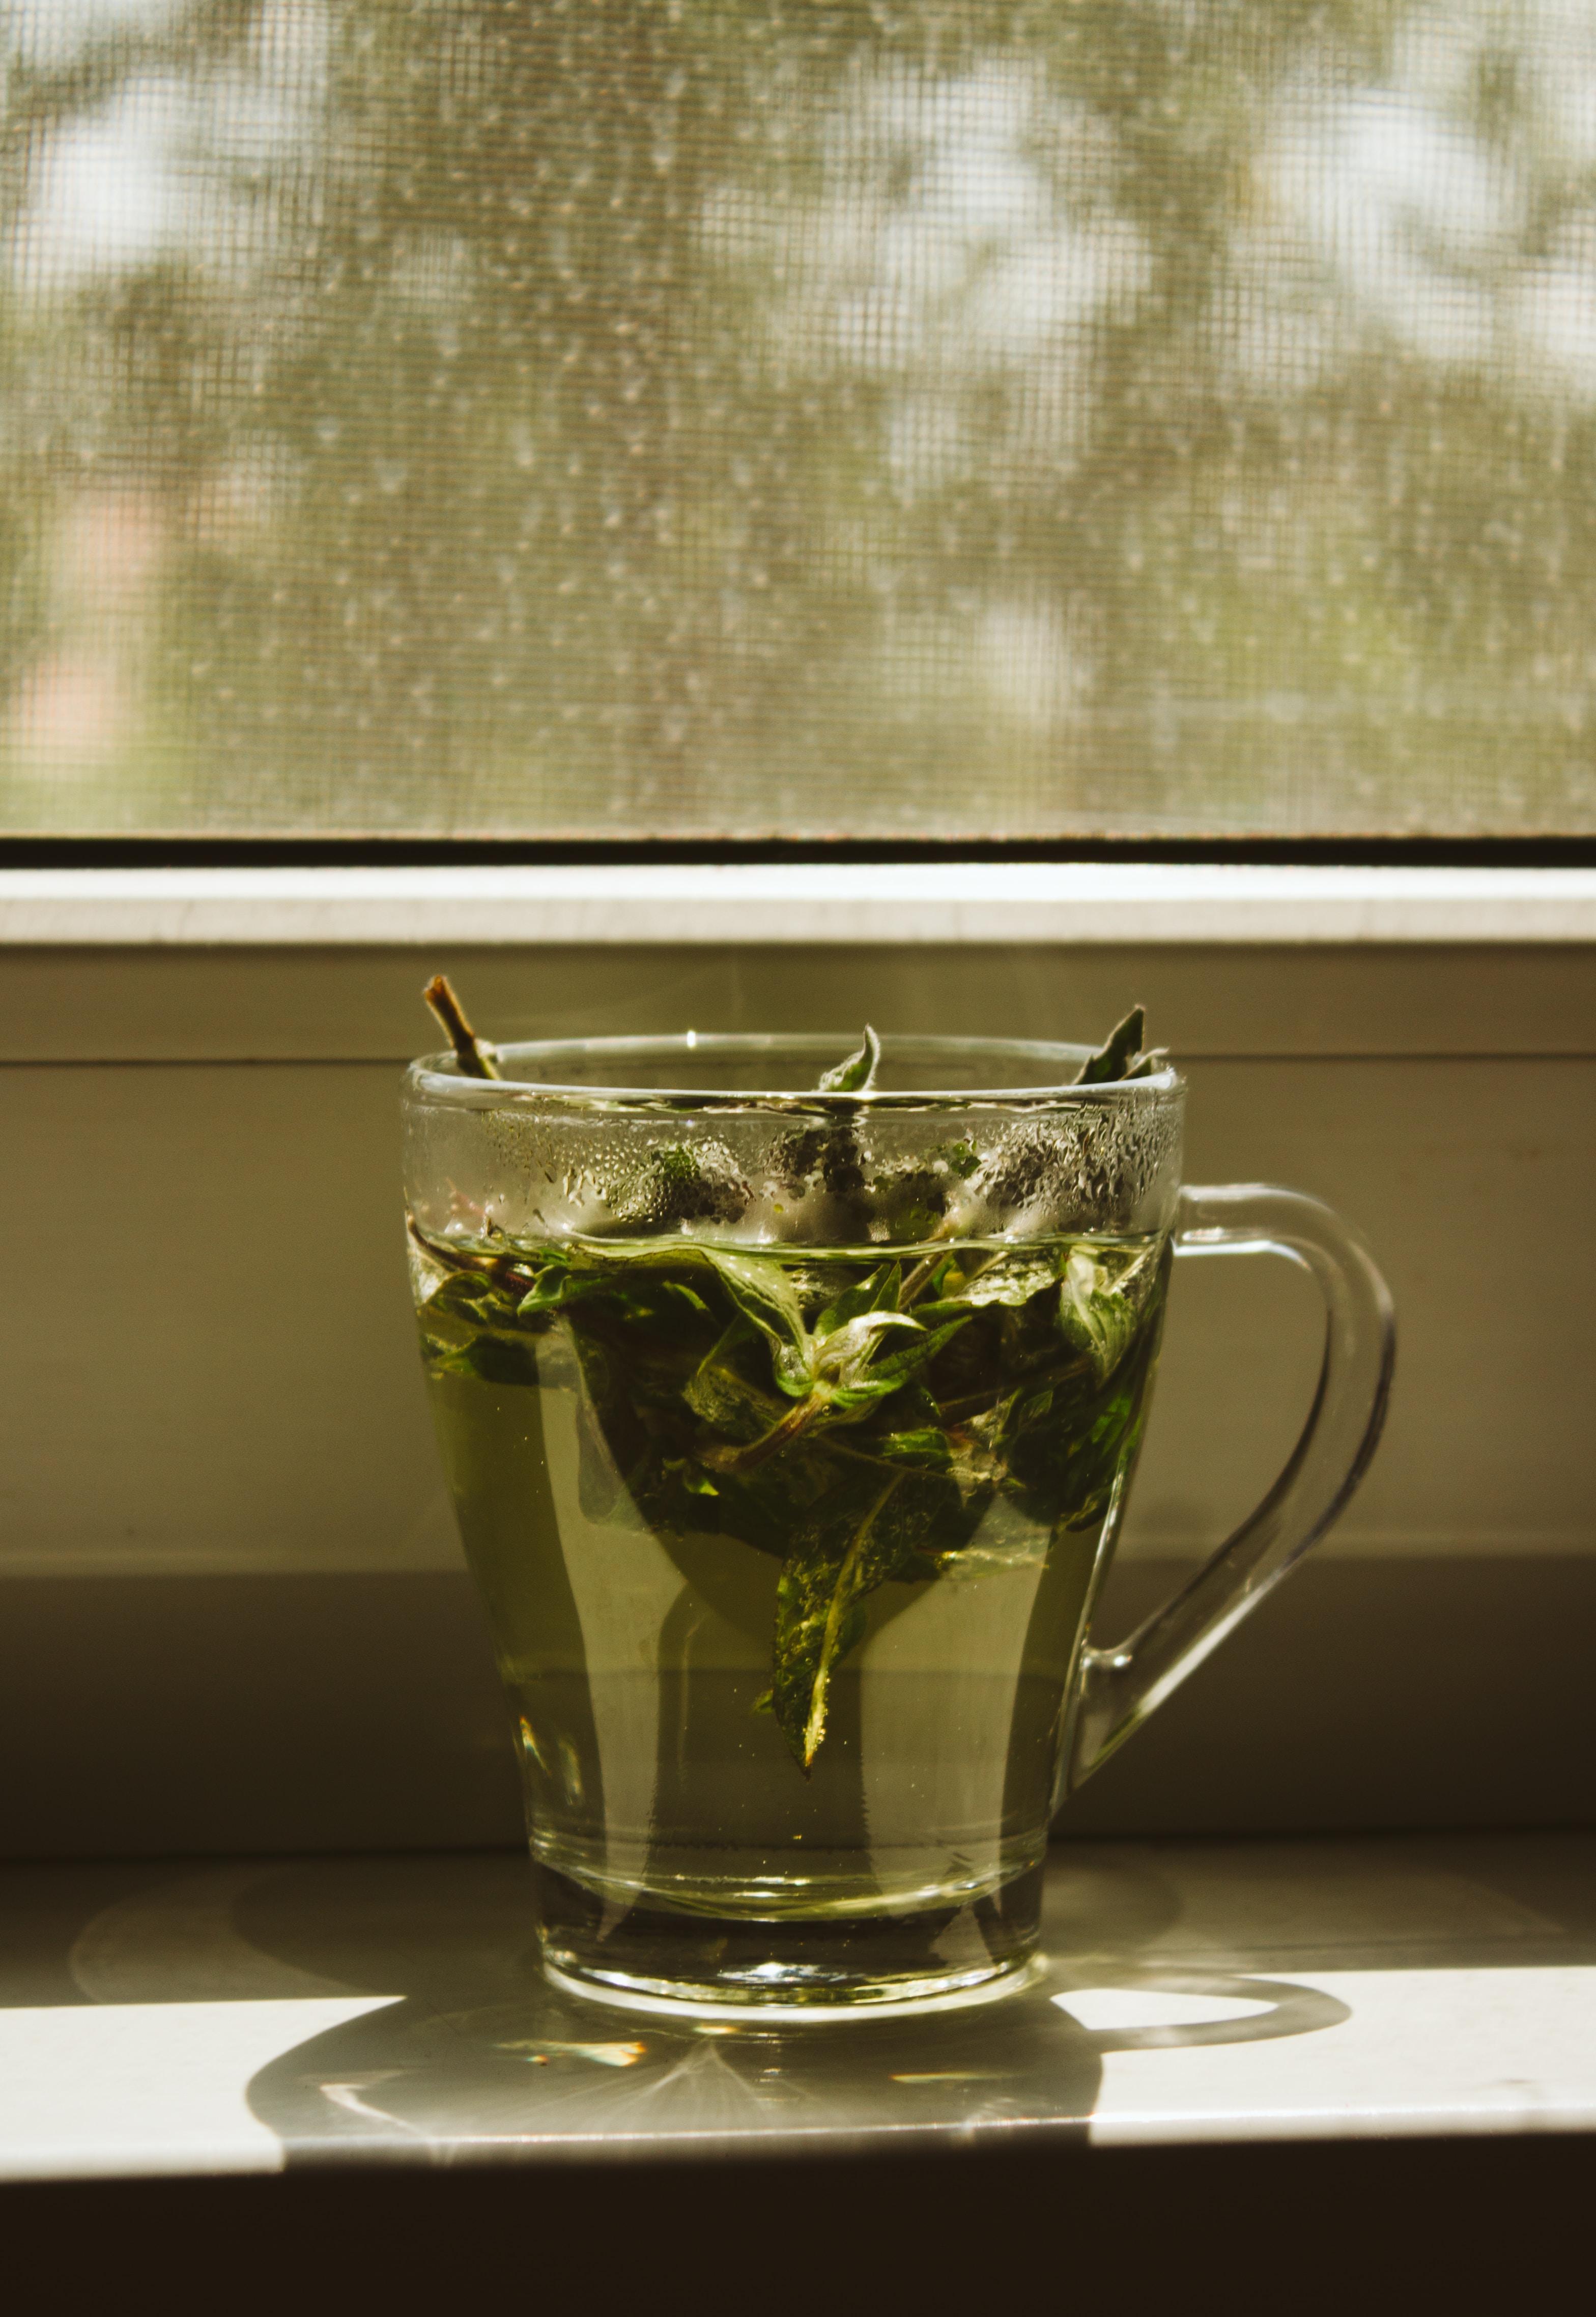 Zielona herbata - zalety i wady. Na co pomaga zielona herbata? Właściwości lecznicze herbaty zielonej. Skutki uboczne picia tego napoju 